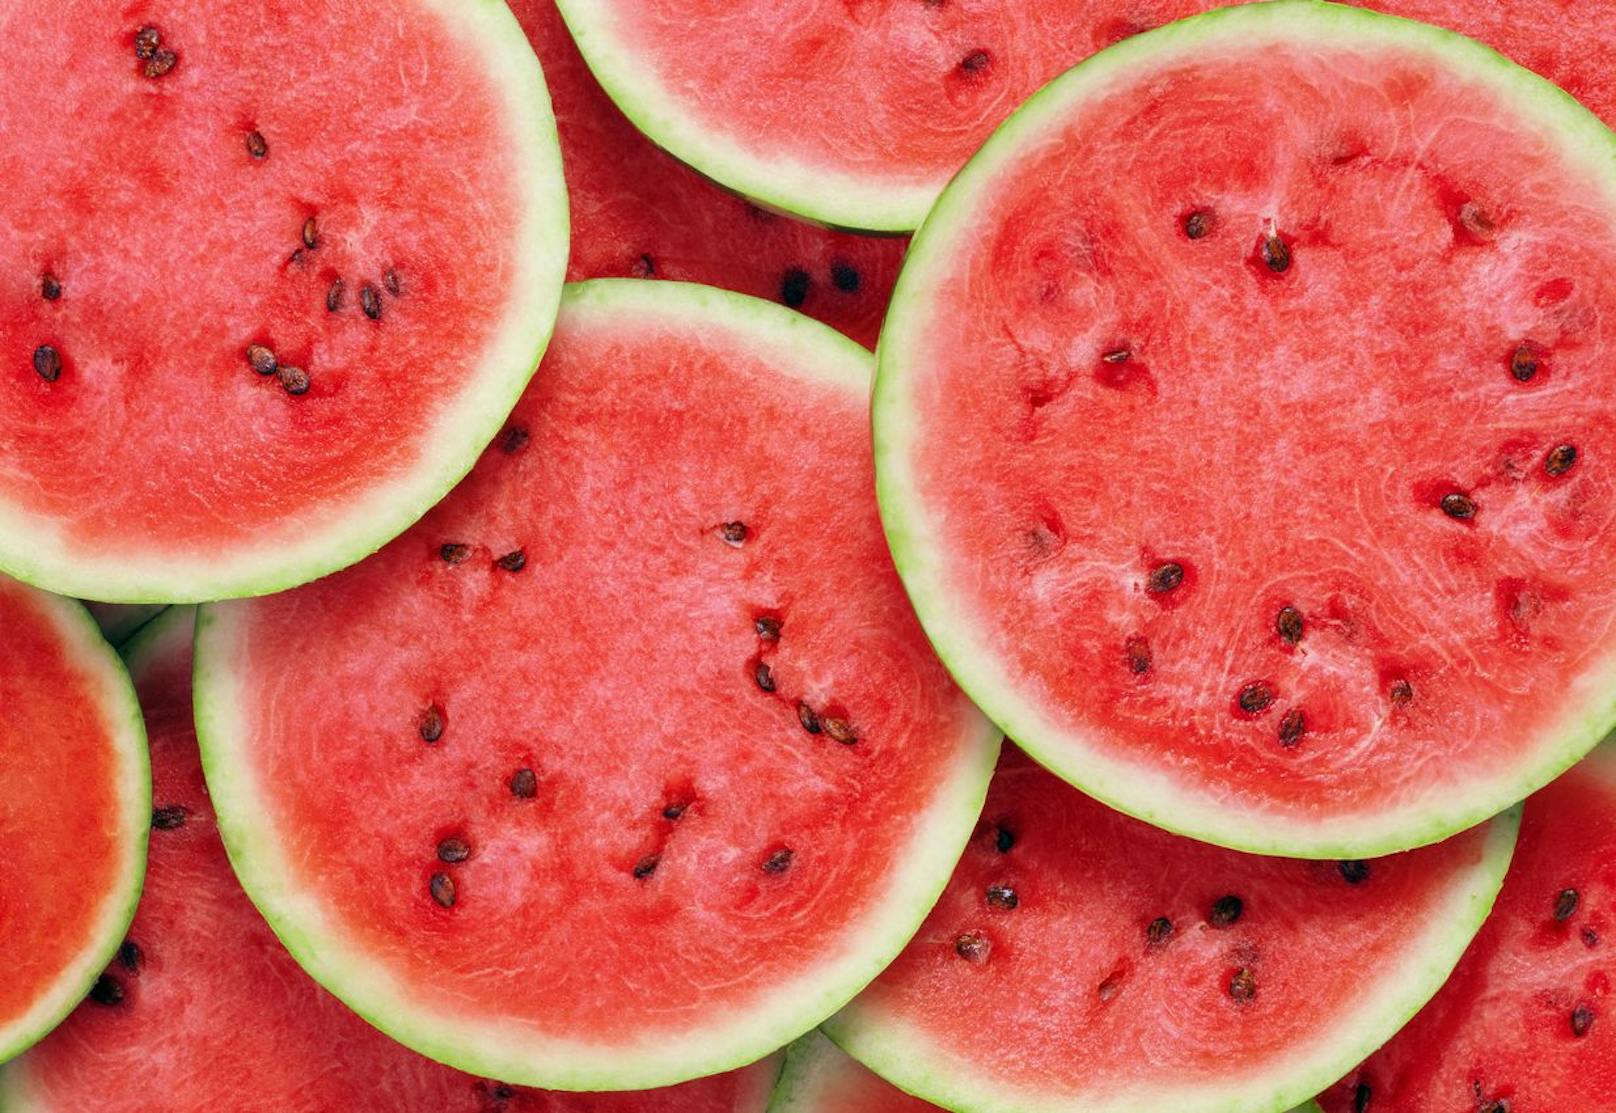 Woran erkennt man eine besonders gute und süße Wassermelone?